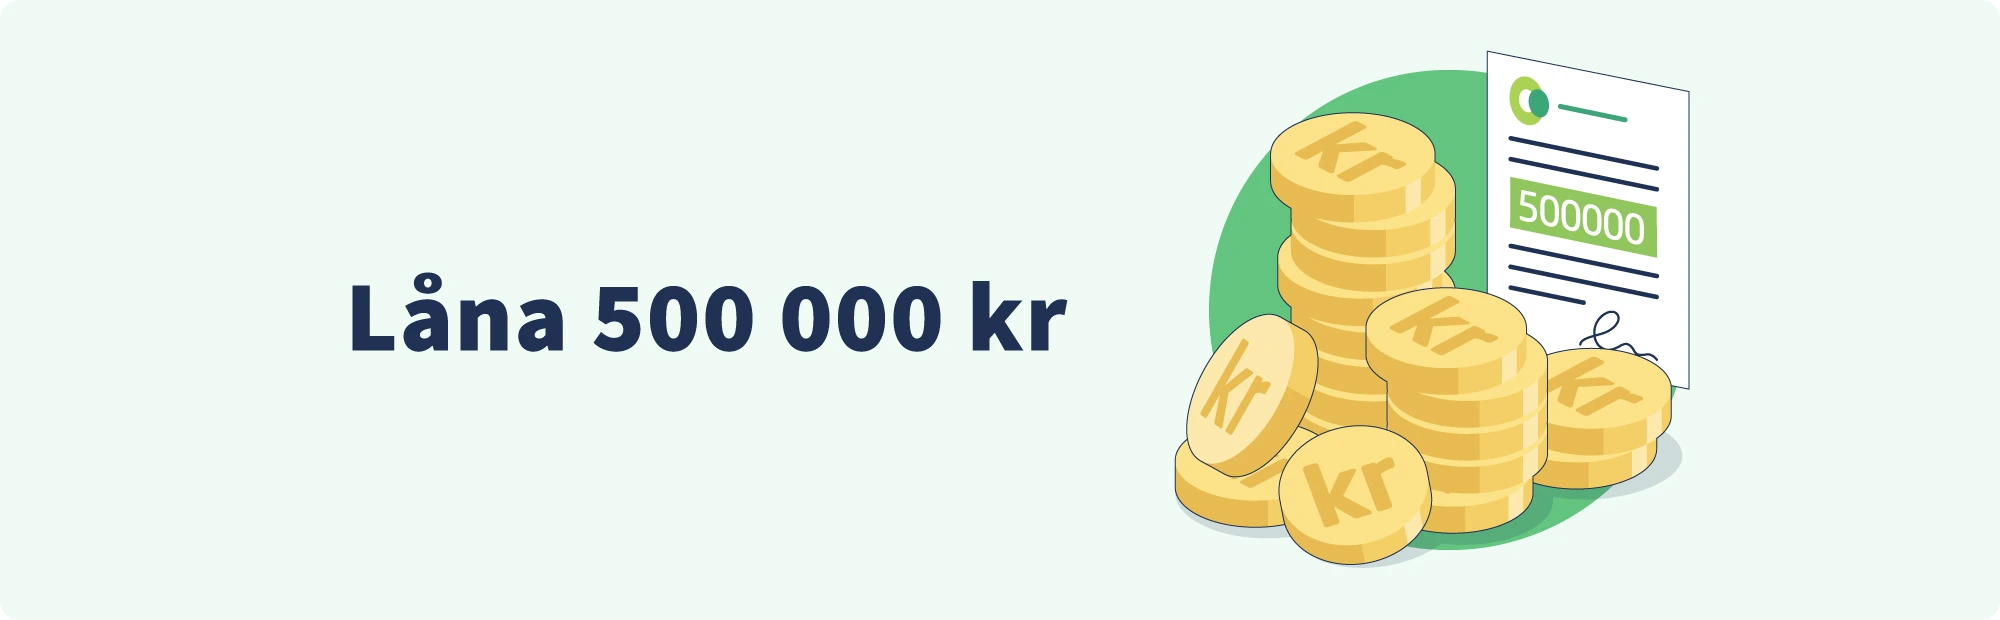 Låna 500 000 kr